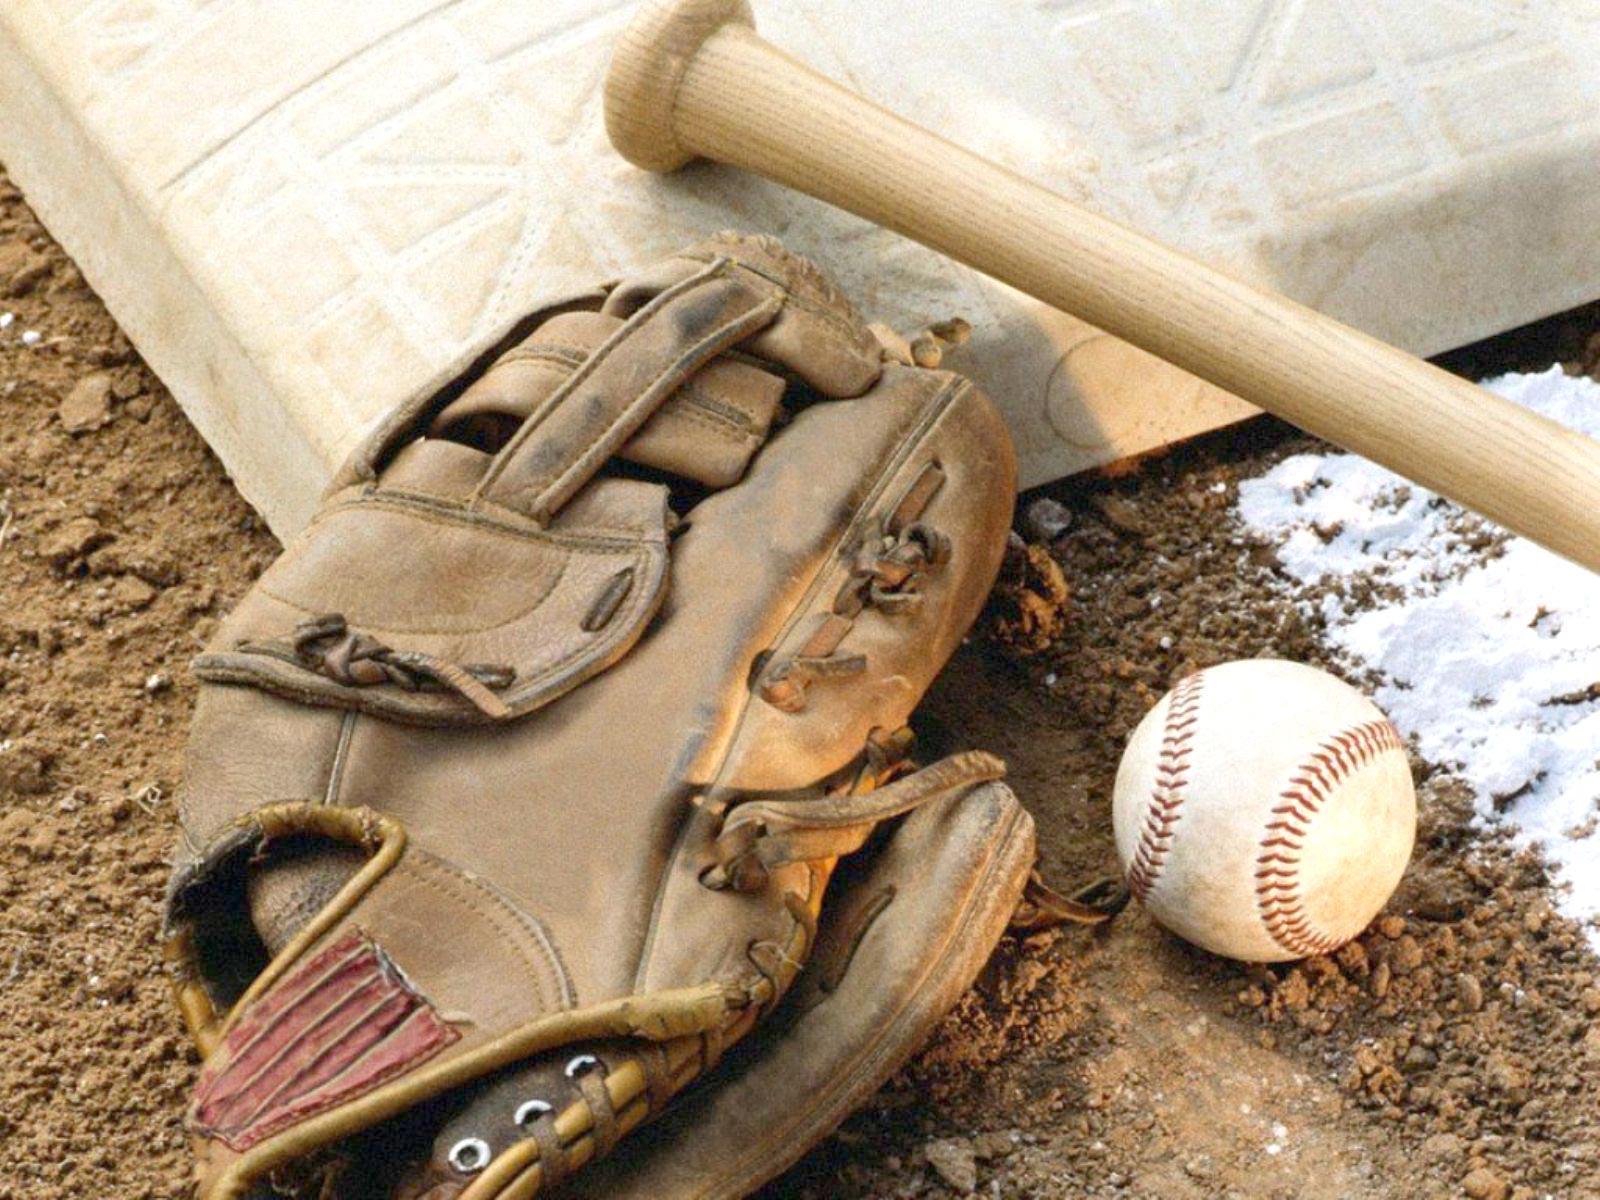 Baseball Background Image